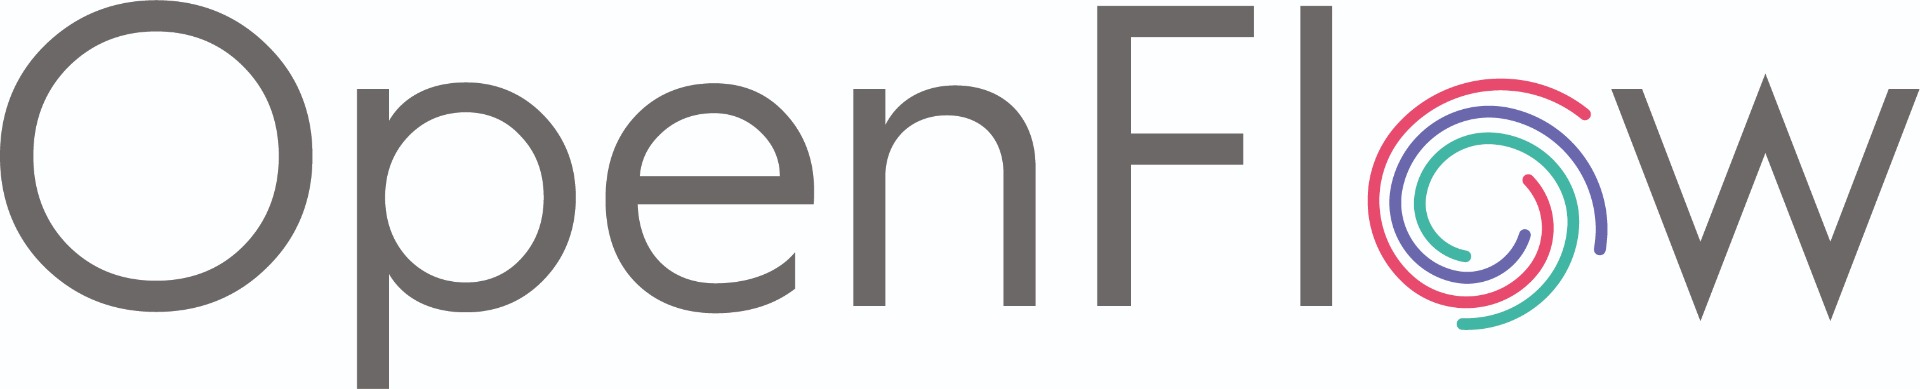 openflow-logo-v2.jpg